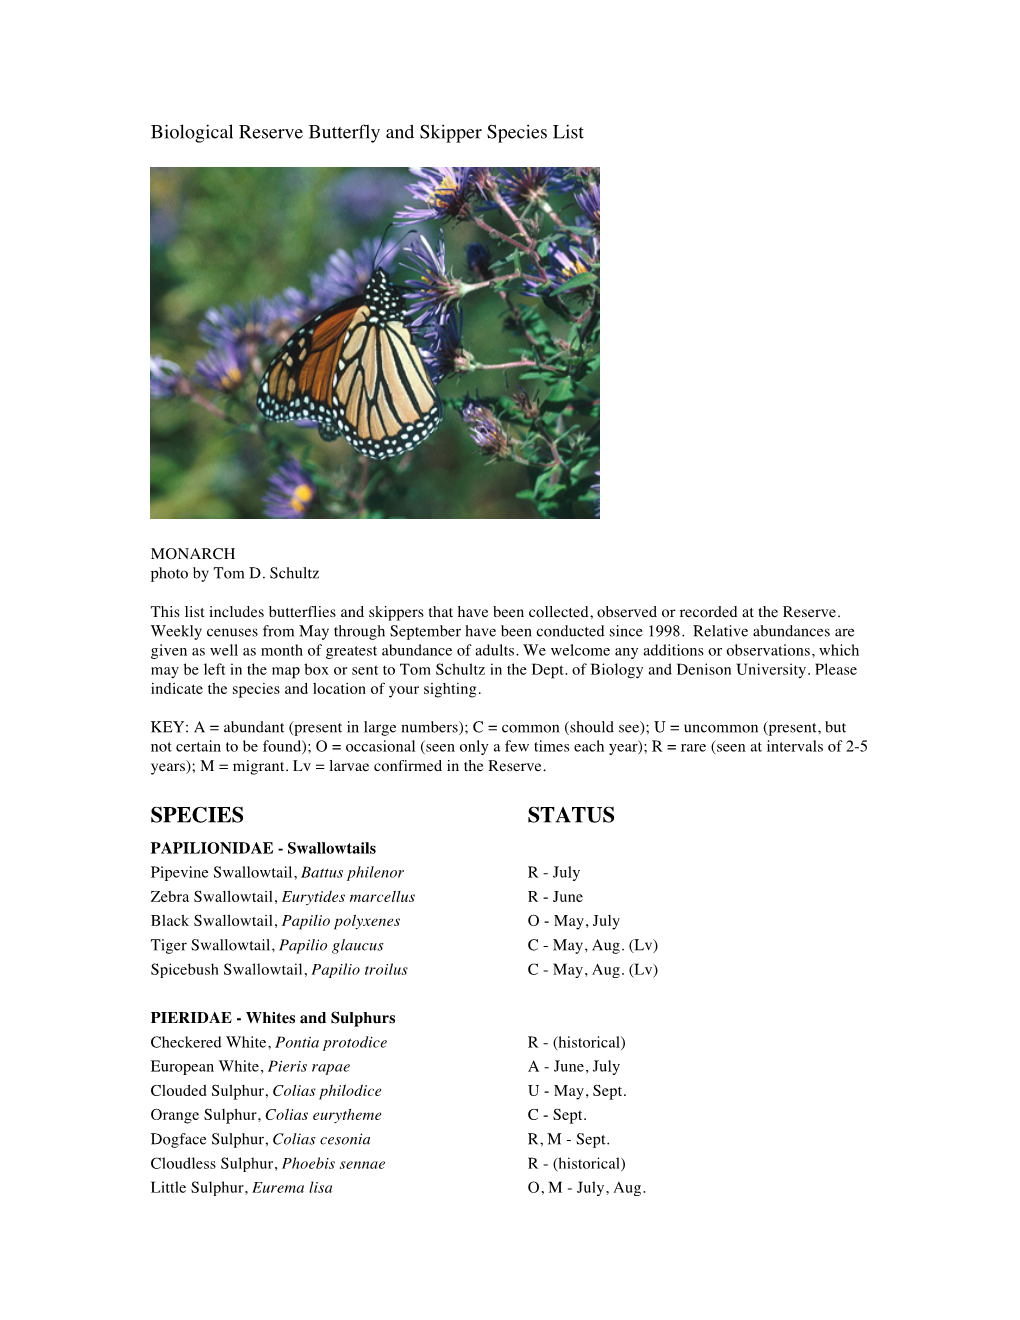 List of Butterfly & Skipper Species